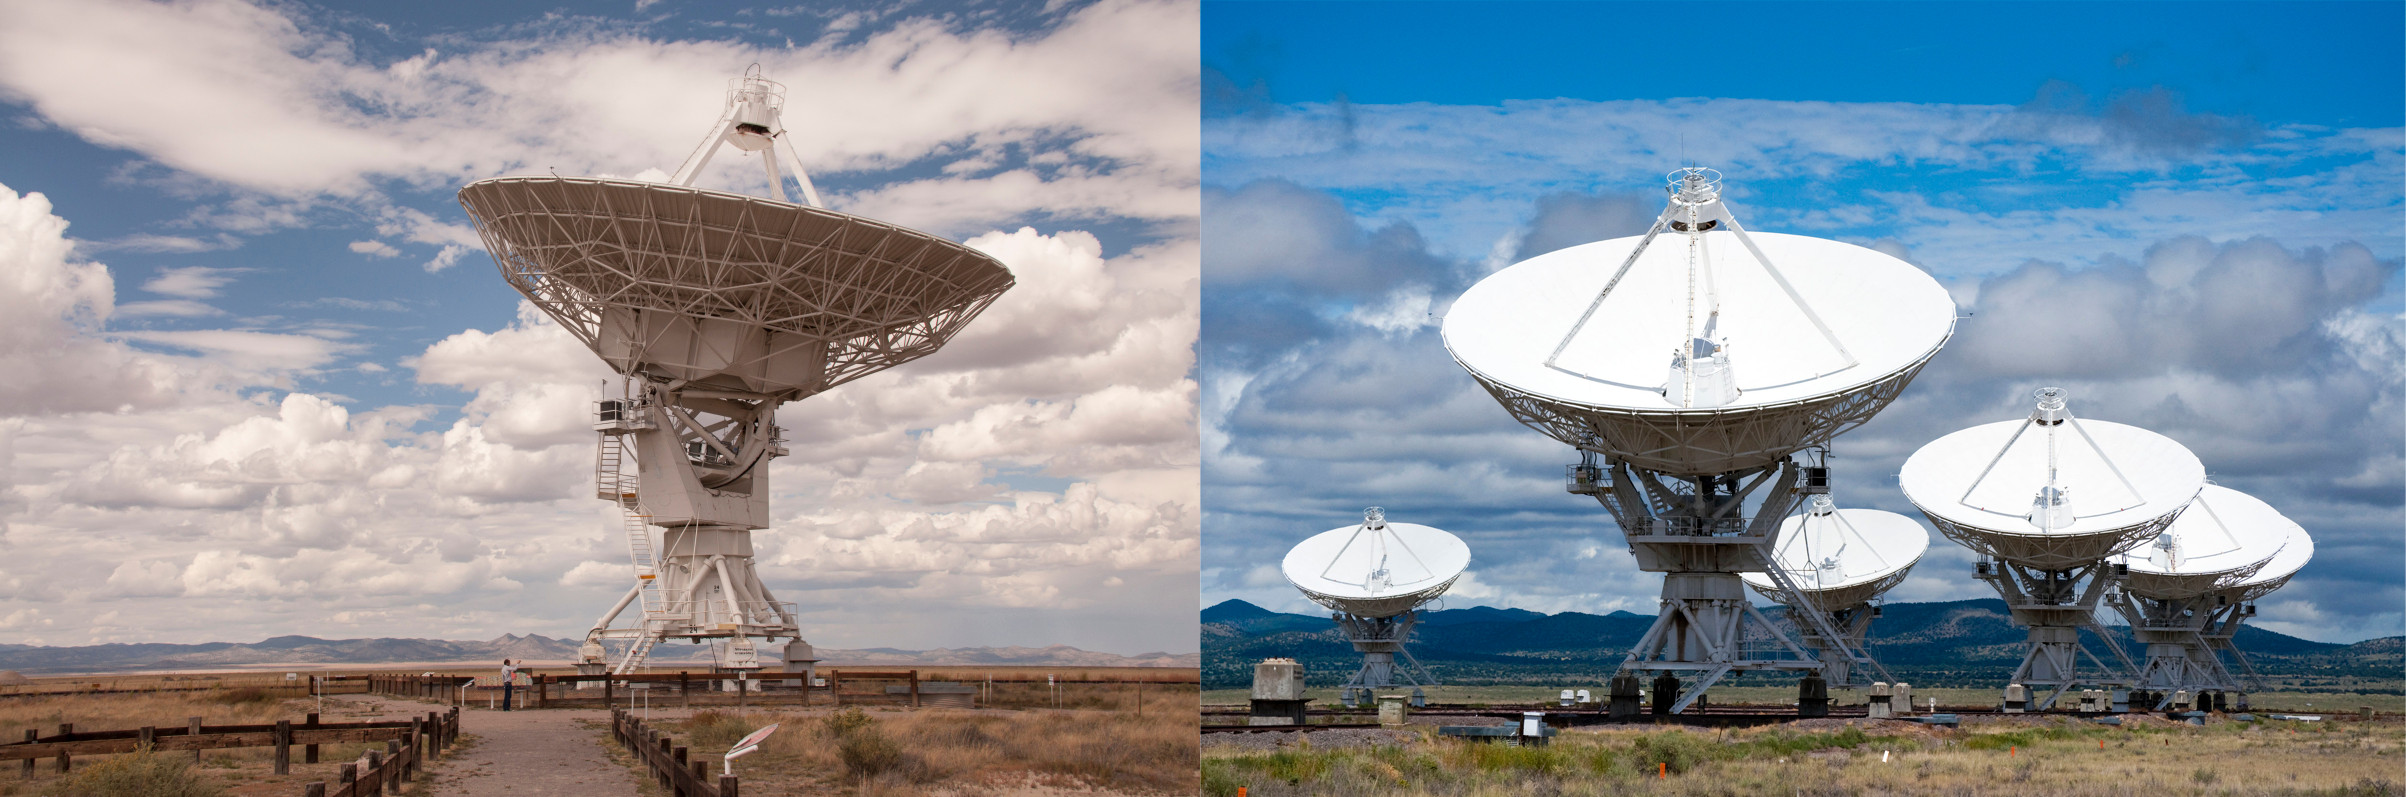 Reference - Very Large Array (VLA) Telescopes - Socorro, New Mexico